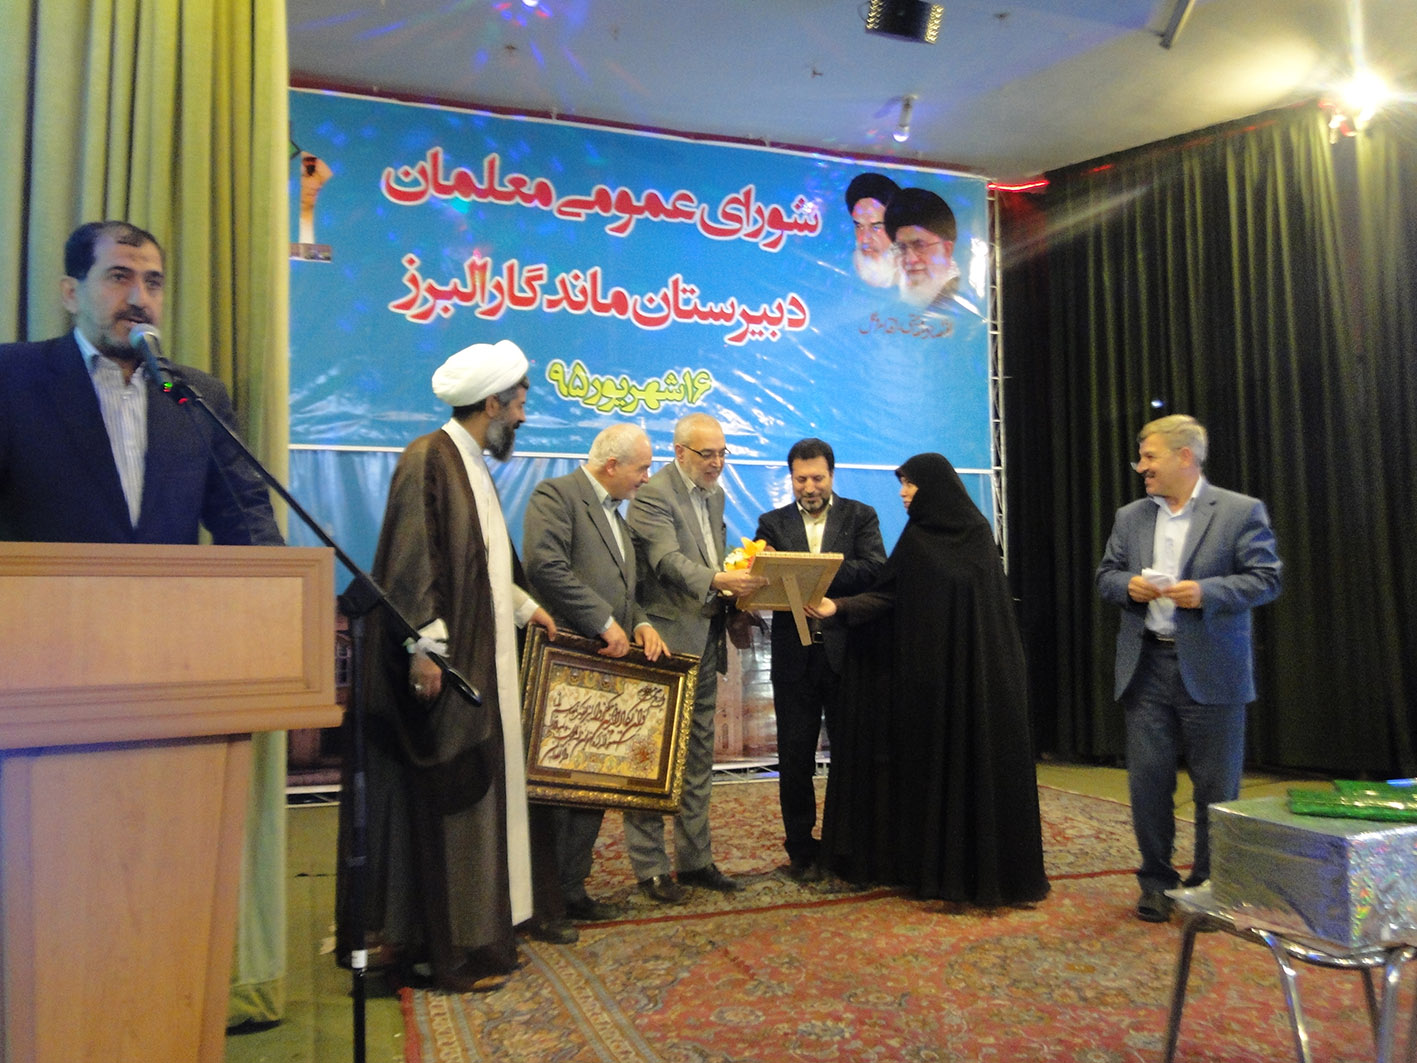 شورای معلمان دبیرستان ماندگار البرز برگزار شد